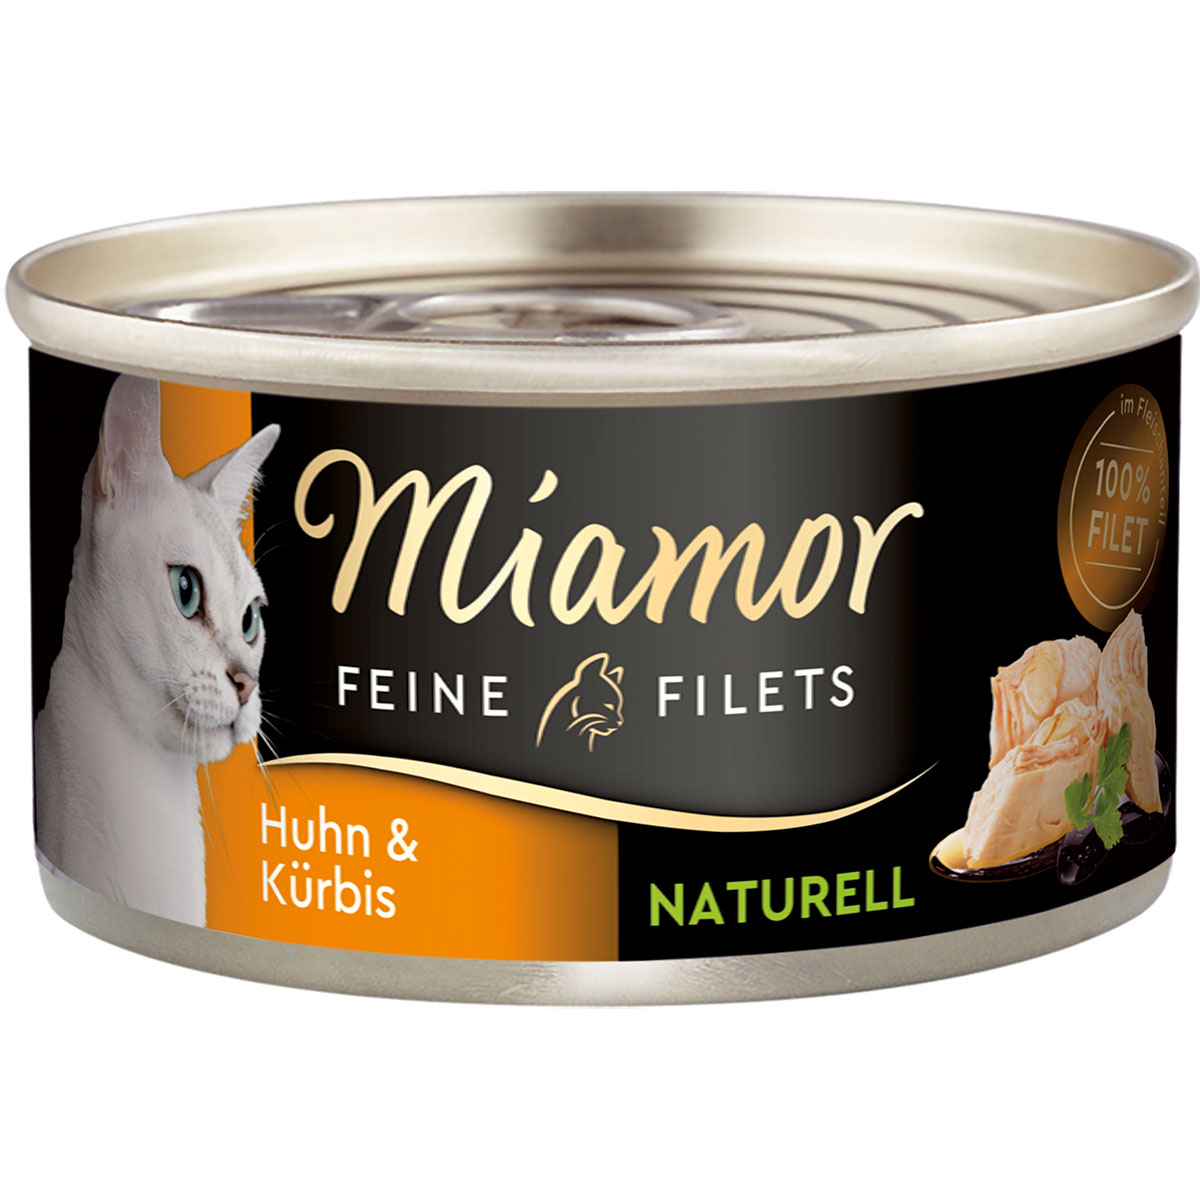 Miamor Feine Filets Naturelle, kuřecí maso a dýně, 80g plechovka